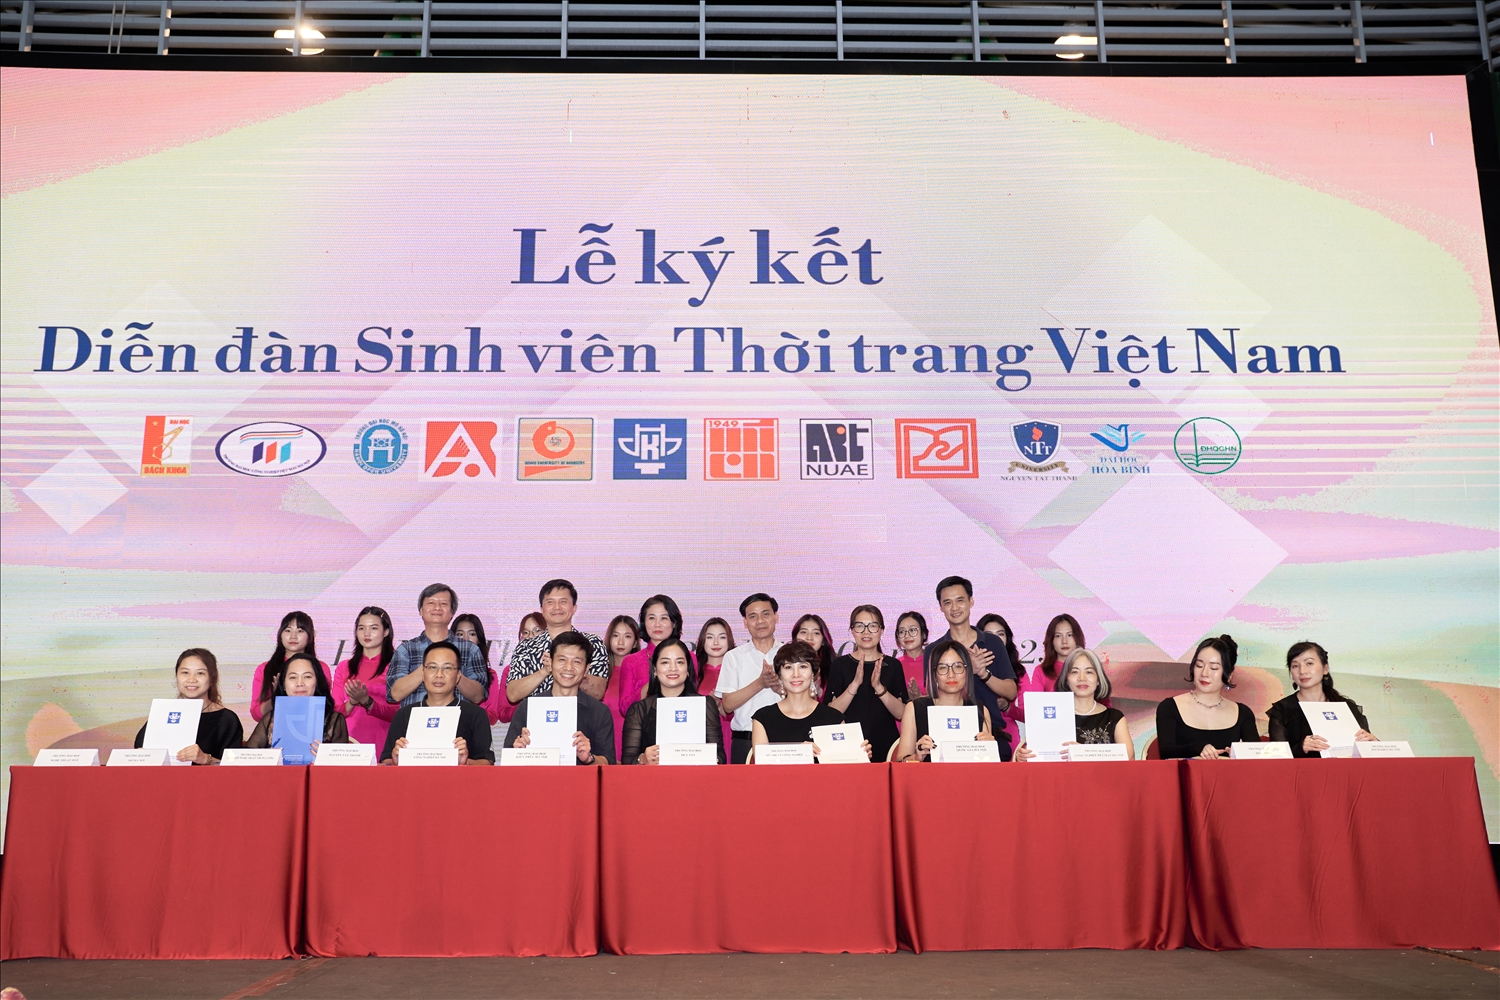 Lễ kí kết ra mắt Diễn đàn Sinh viên Thời trang Việt Nam giữa 12 trường Đại học trên cả nước